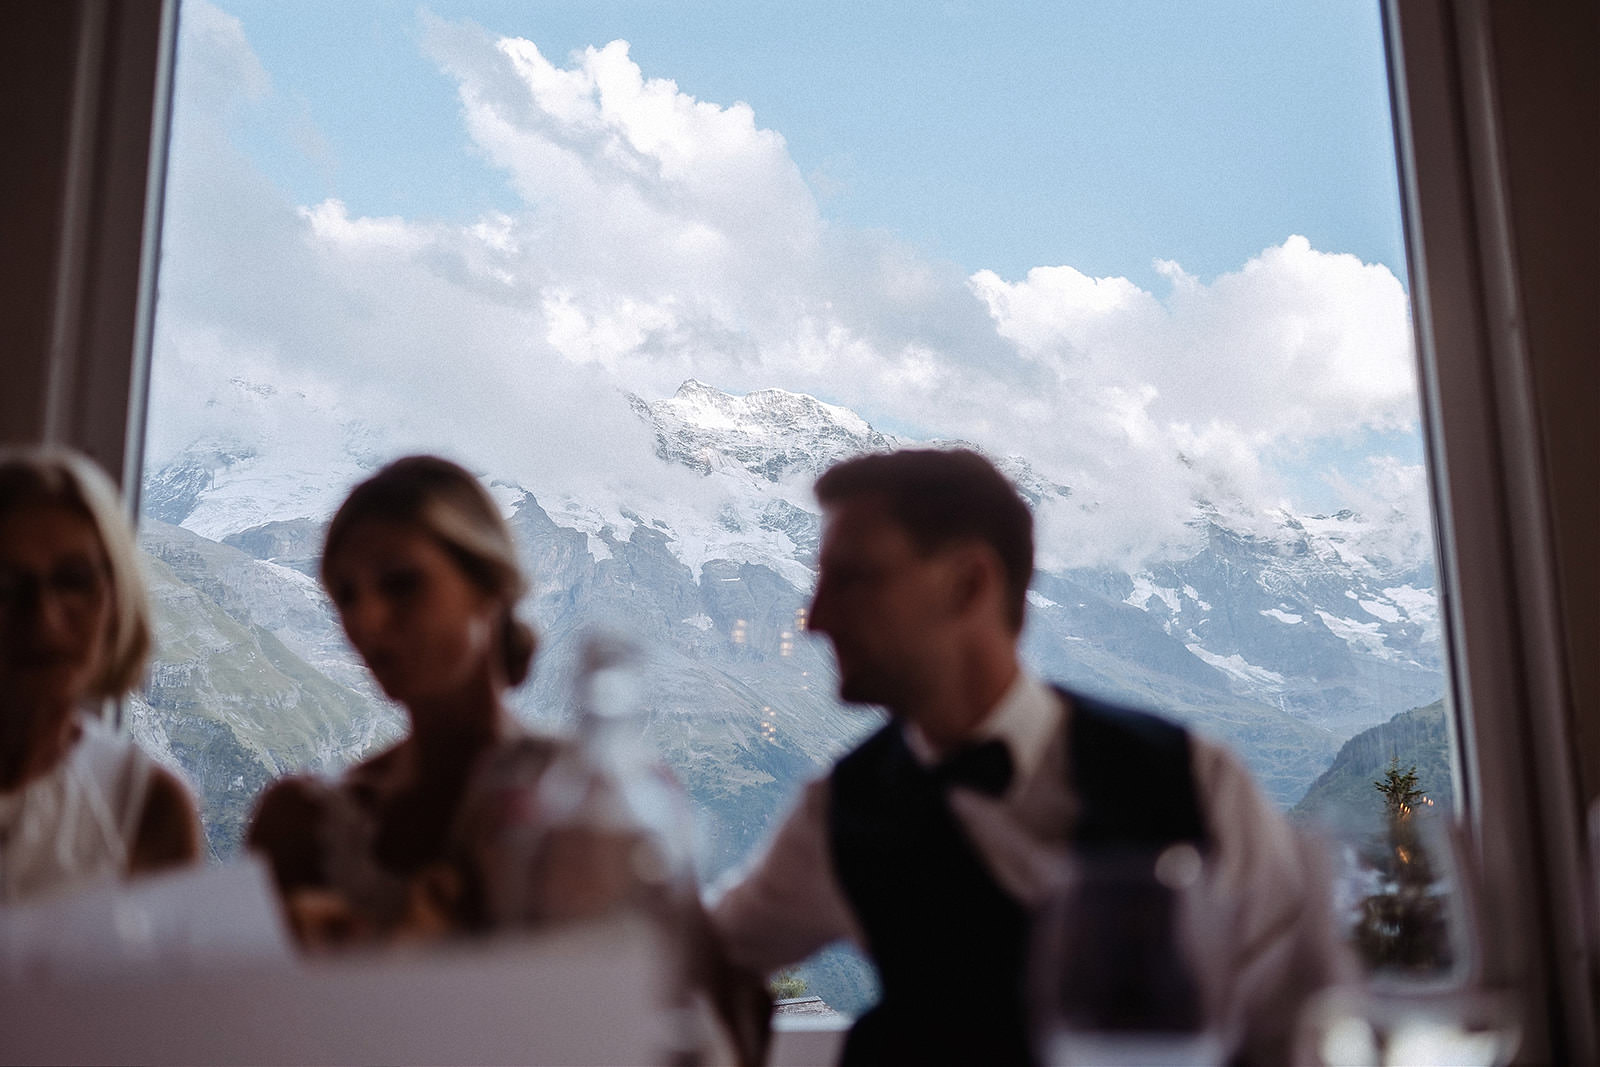 hochzeitsreportage mürren schweiz alpen